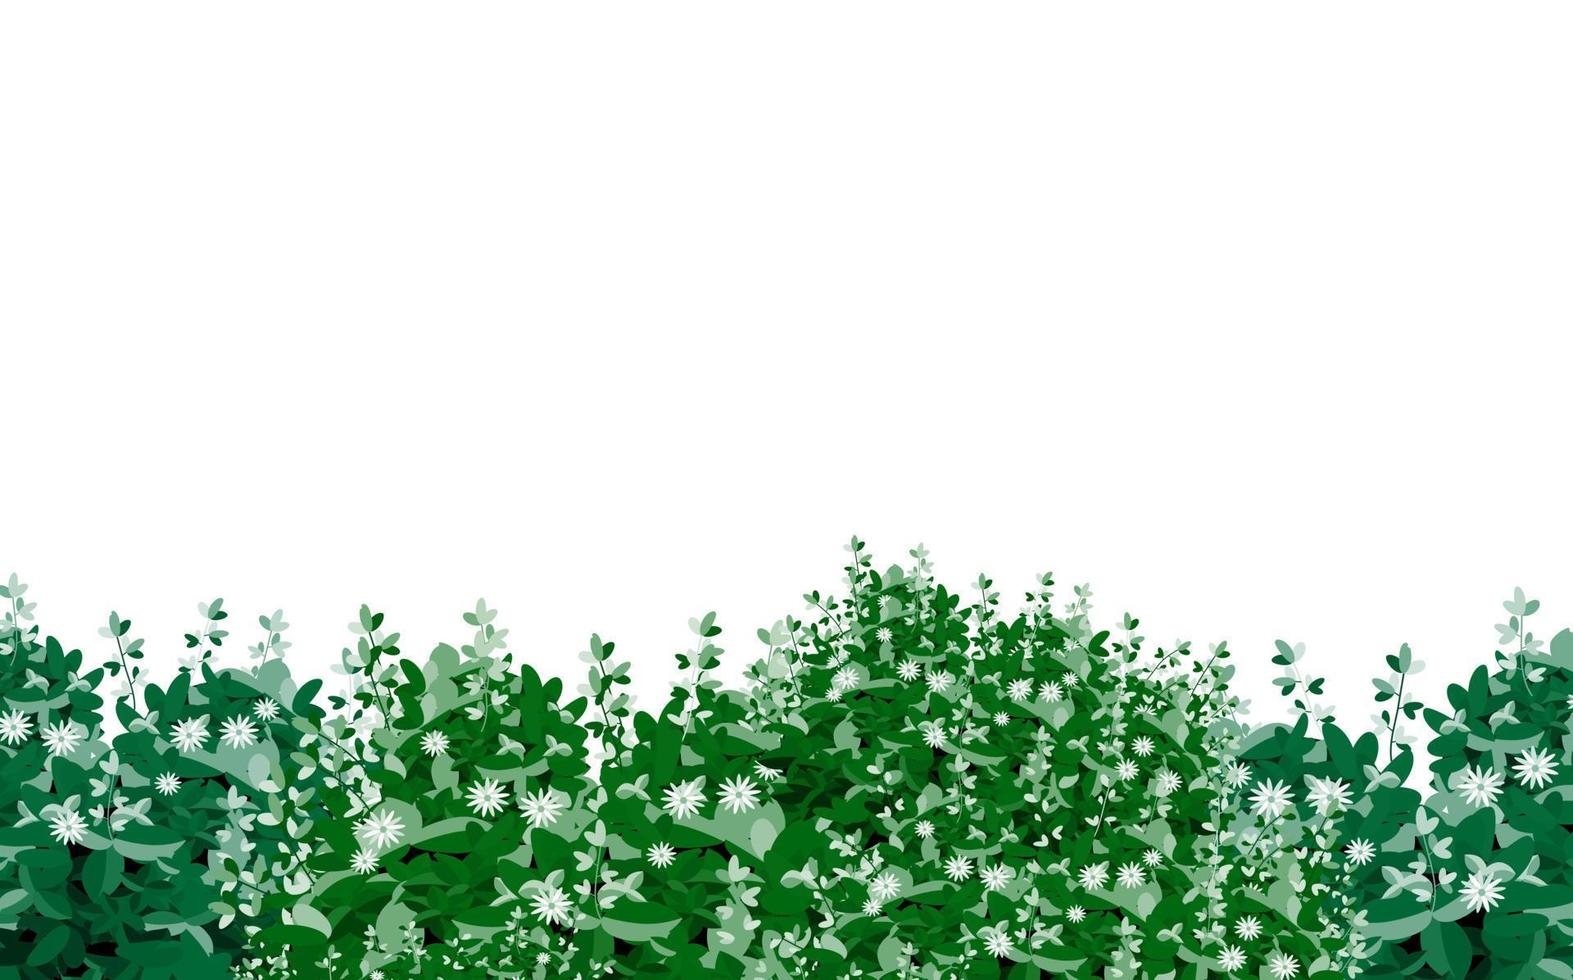 reeks van sier- groen fabriek in de het formulier van een hedge.realistisch tuin struik, seizoensgebonden struik, buxus, boom kroon struik gebladerte. vector